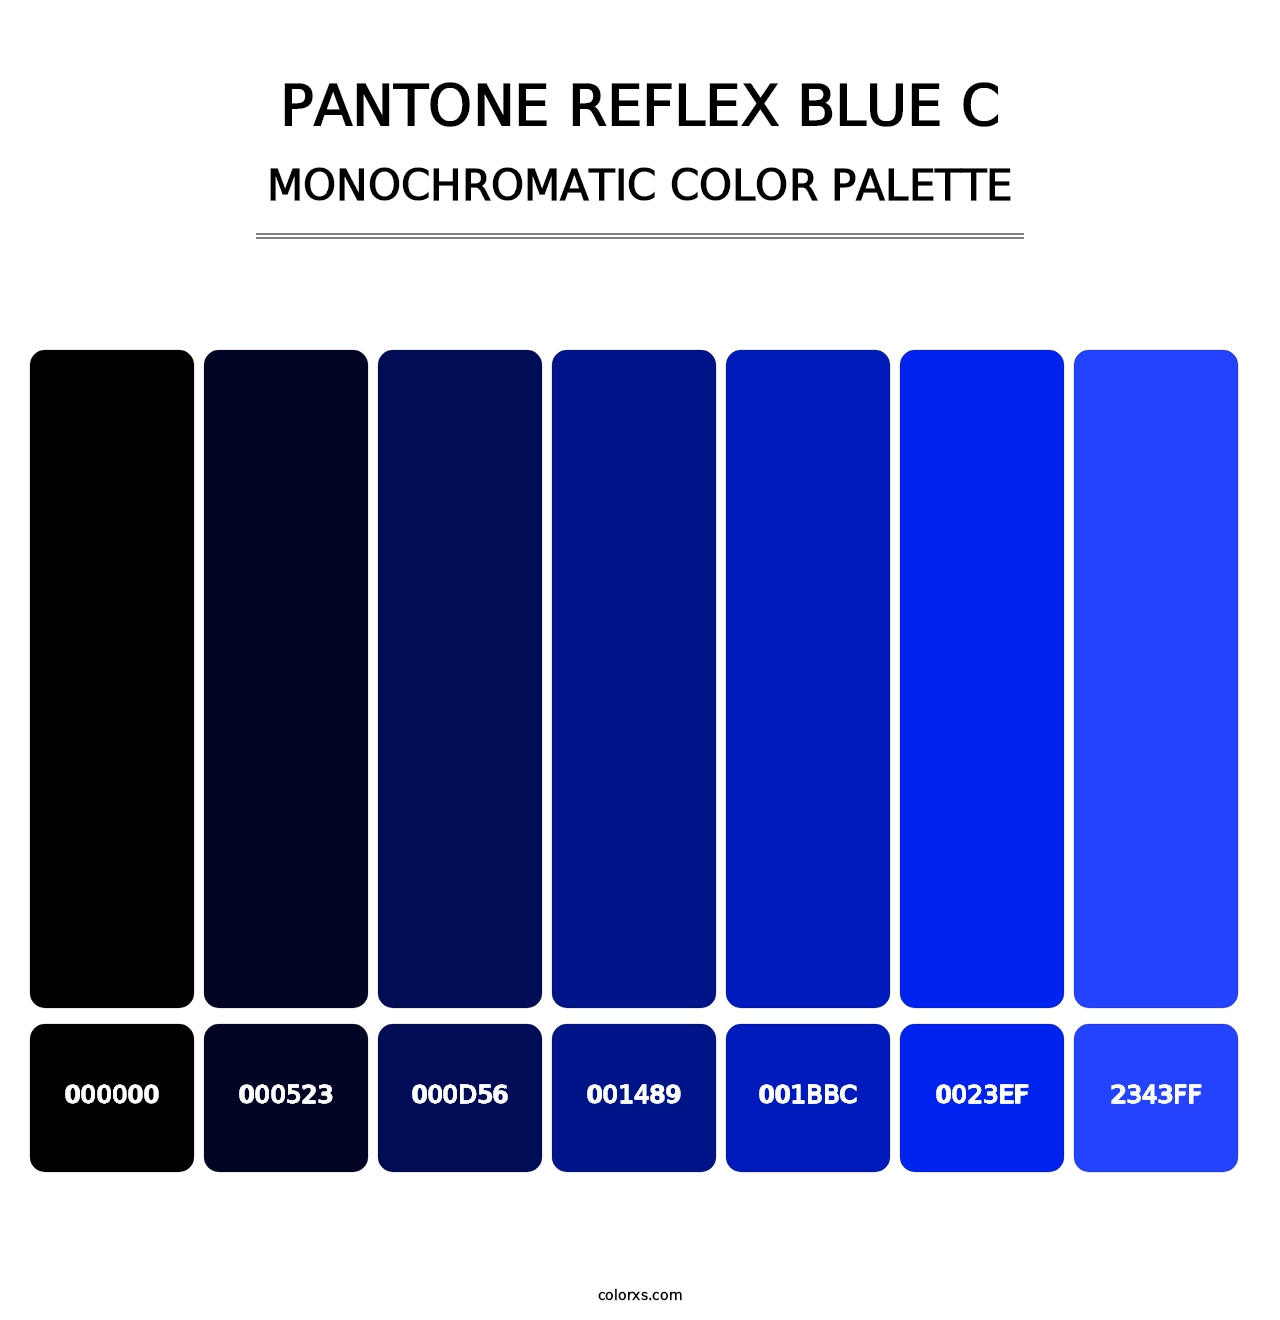 PANTONE Reflex Blue C - Monochromatic Color Palette